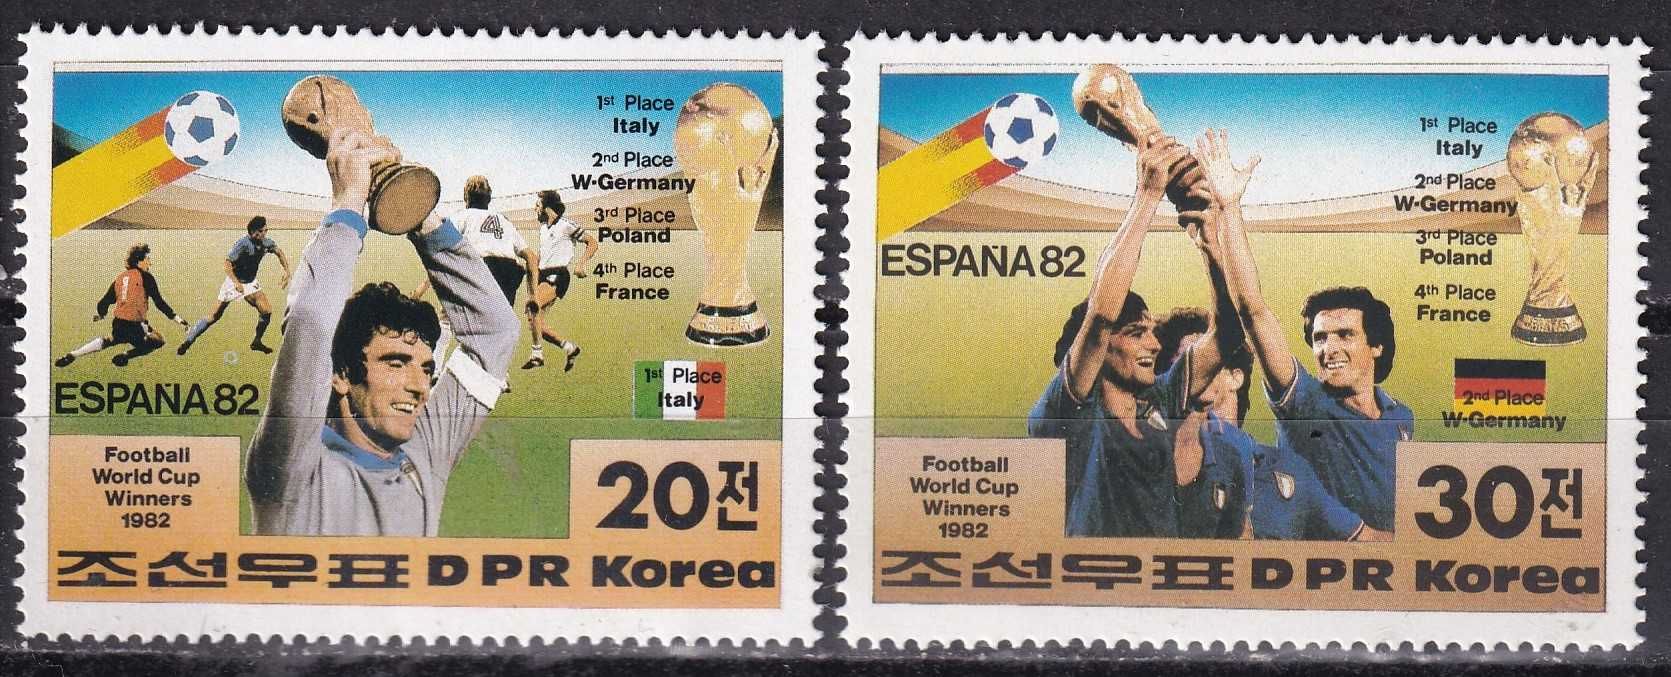 znaczki pocztowe - KRLD 1982 cena 4,90 zł kat.6€